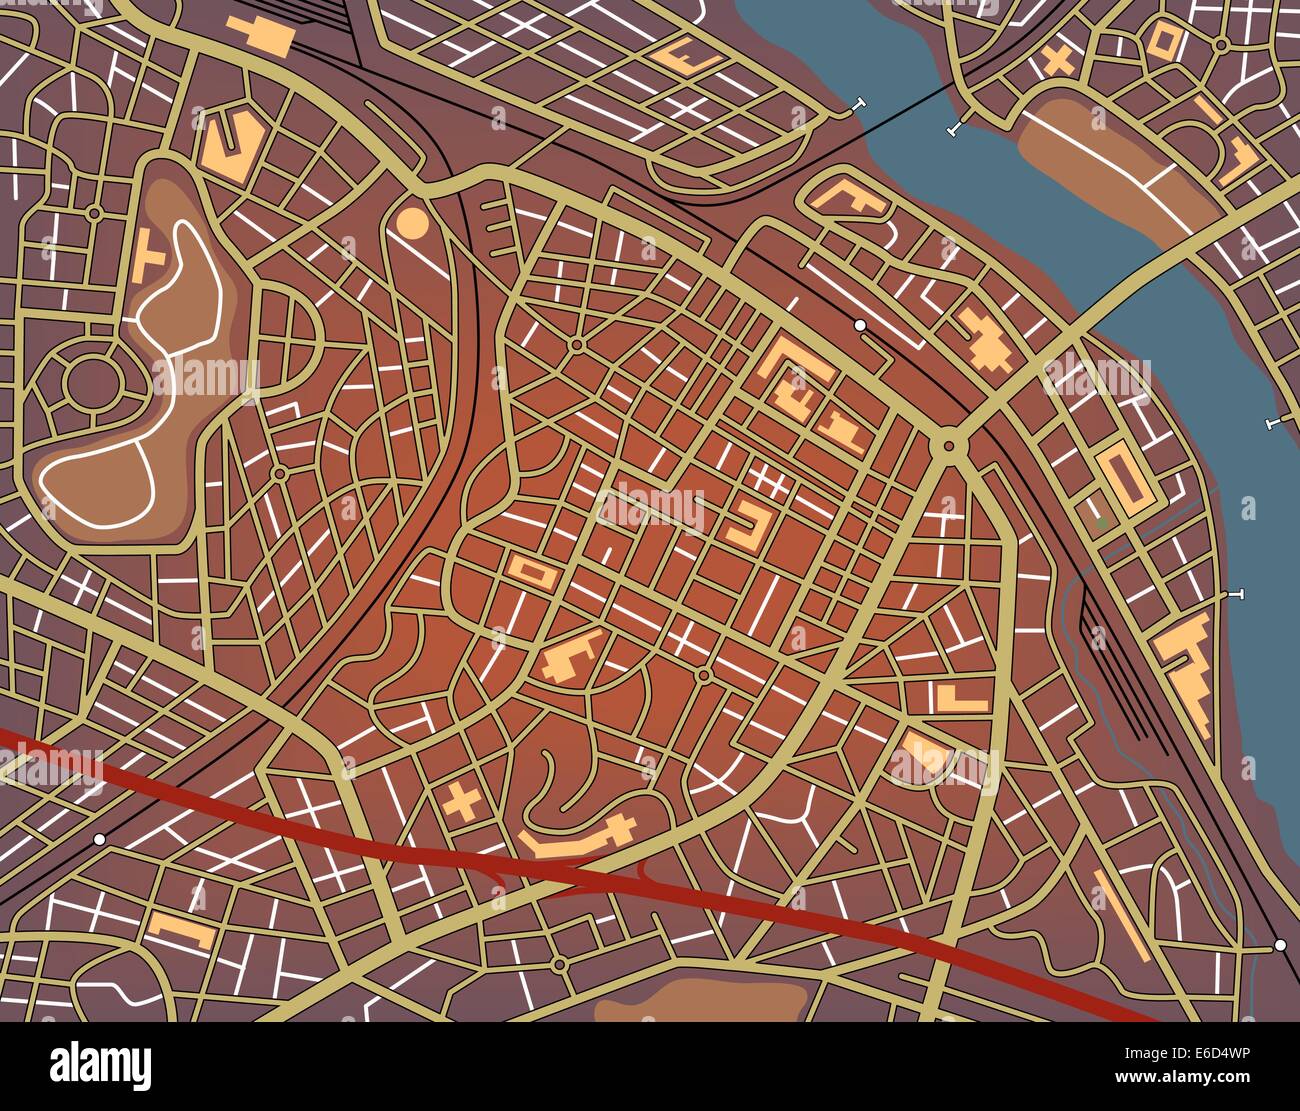 Modificabile mappa vettoriale di una generica città con i nomi di n. Illustrazione Vettoriale